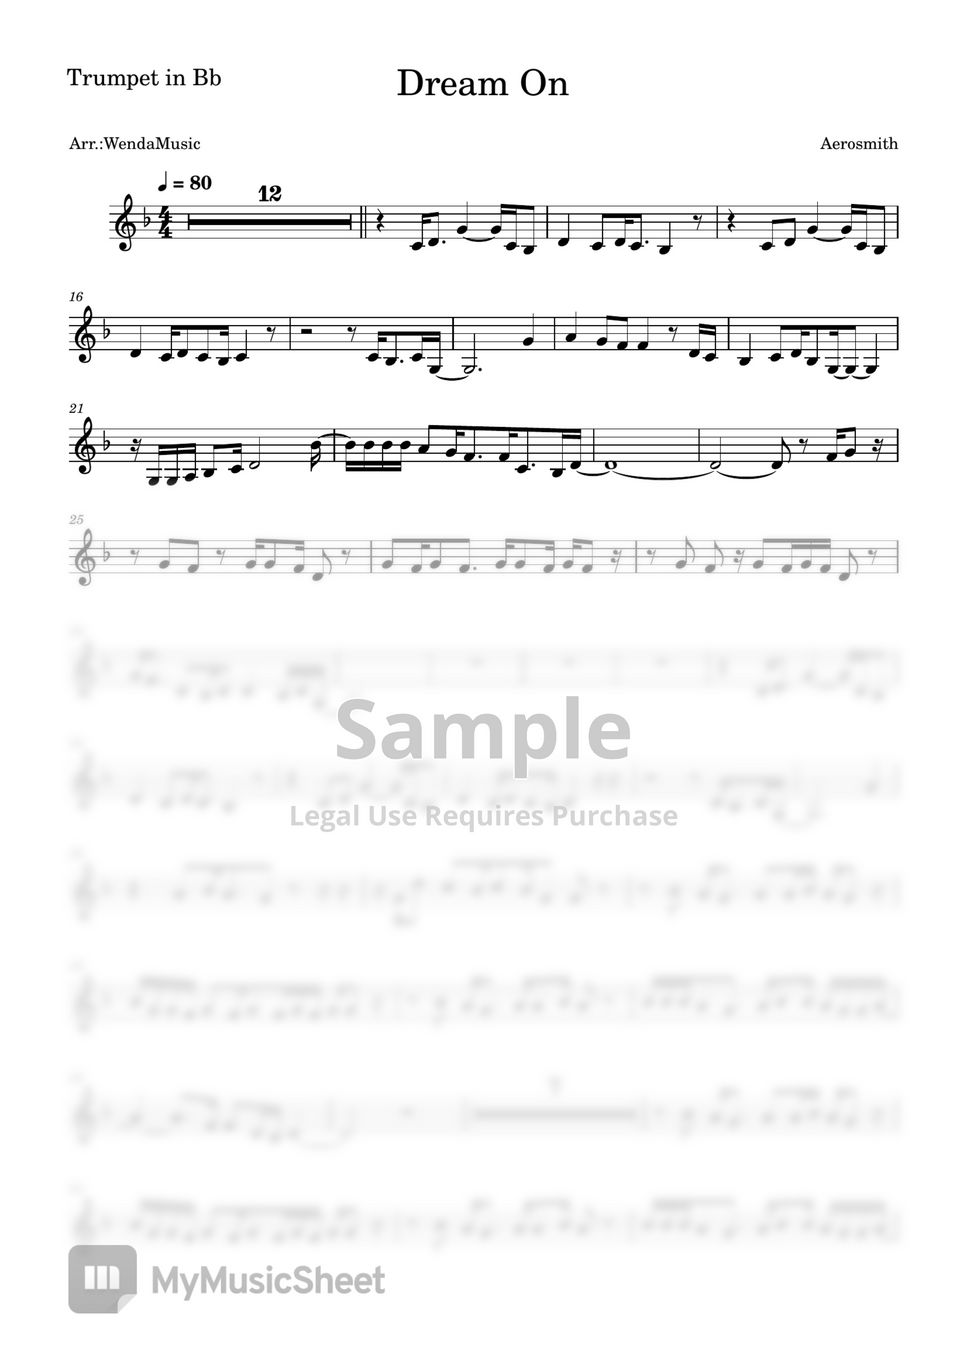 Aerosmith - Dream On (Trumpet in Bb) by WendaMusic